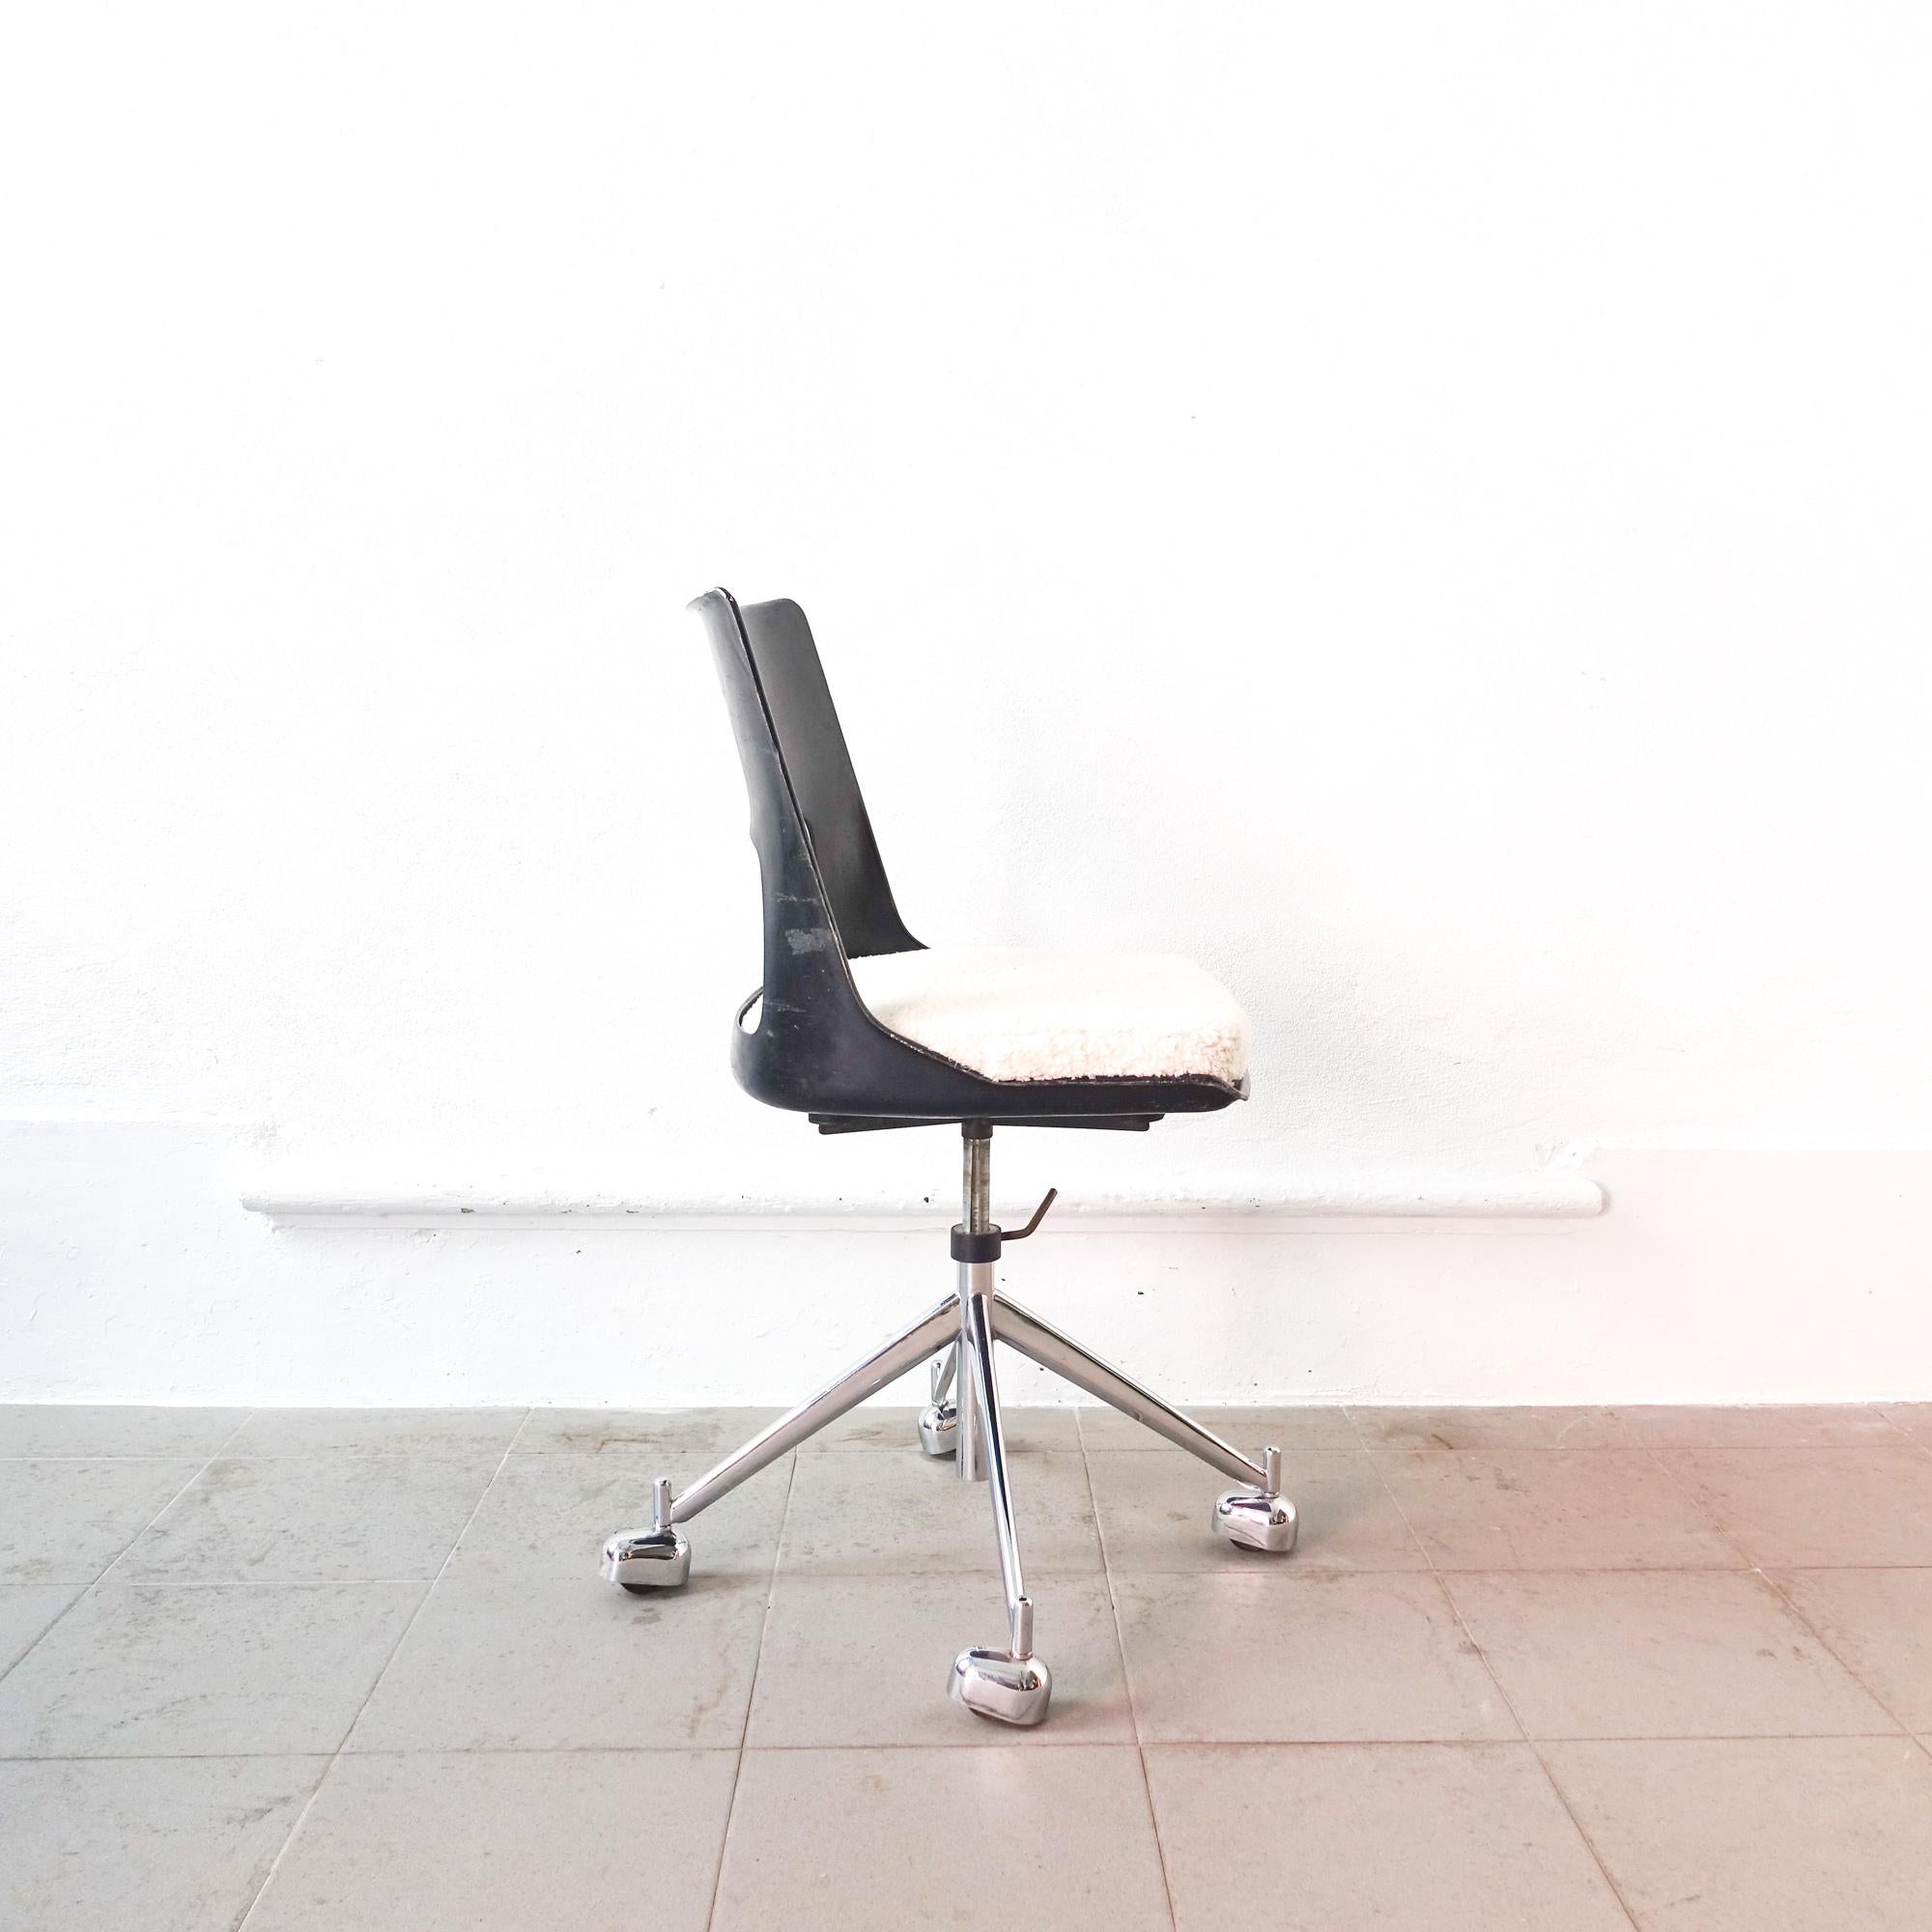 Mid-20th Century Mid-Century Danish Swivel Chair, Model KK-1A, by Kay Korbing for Fibrex Denmark